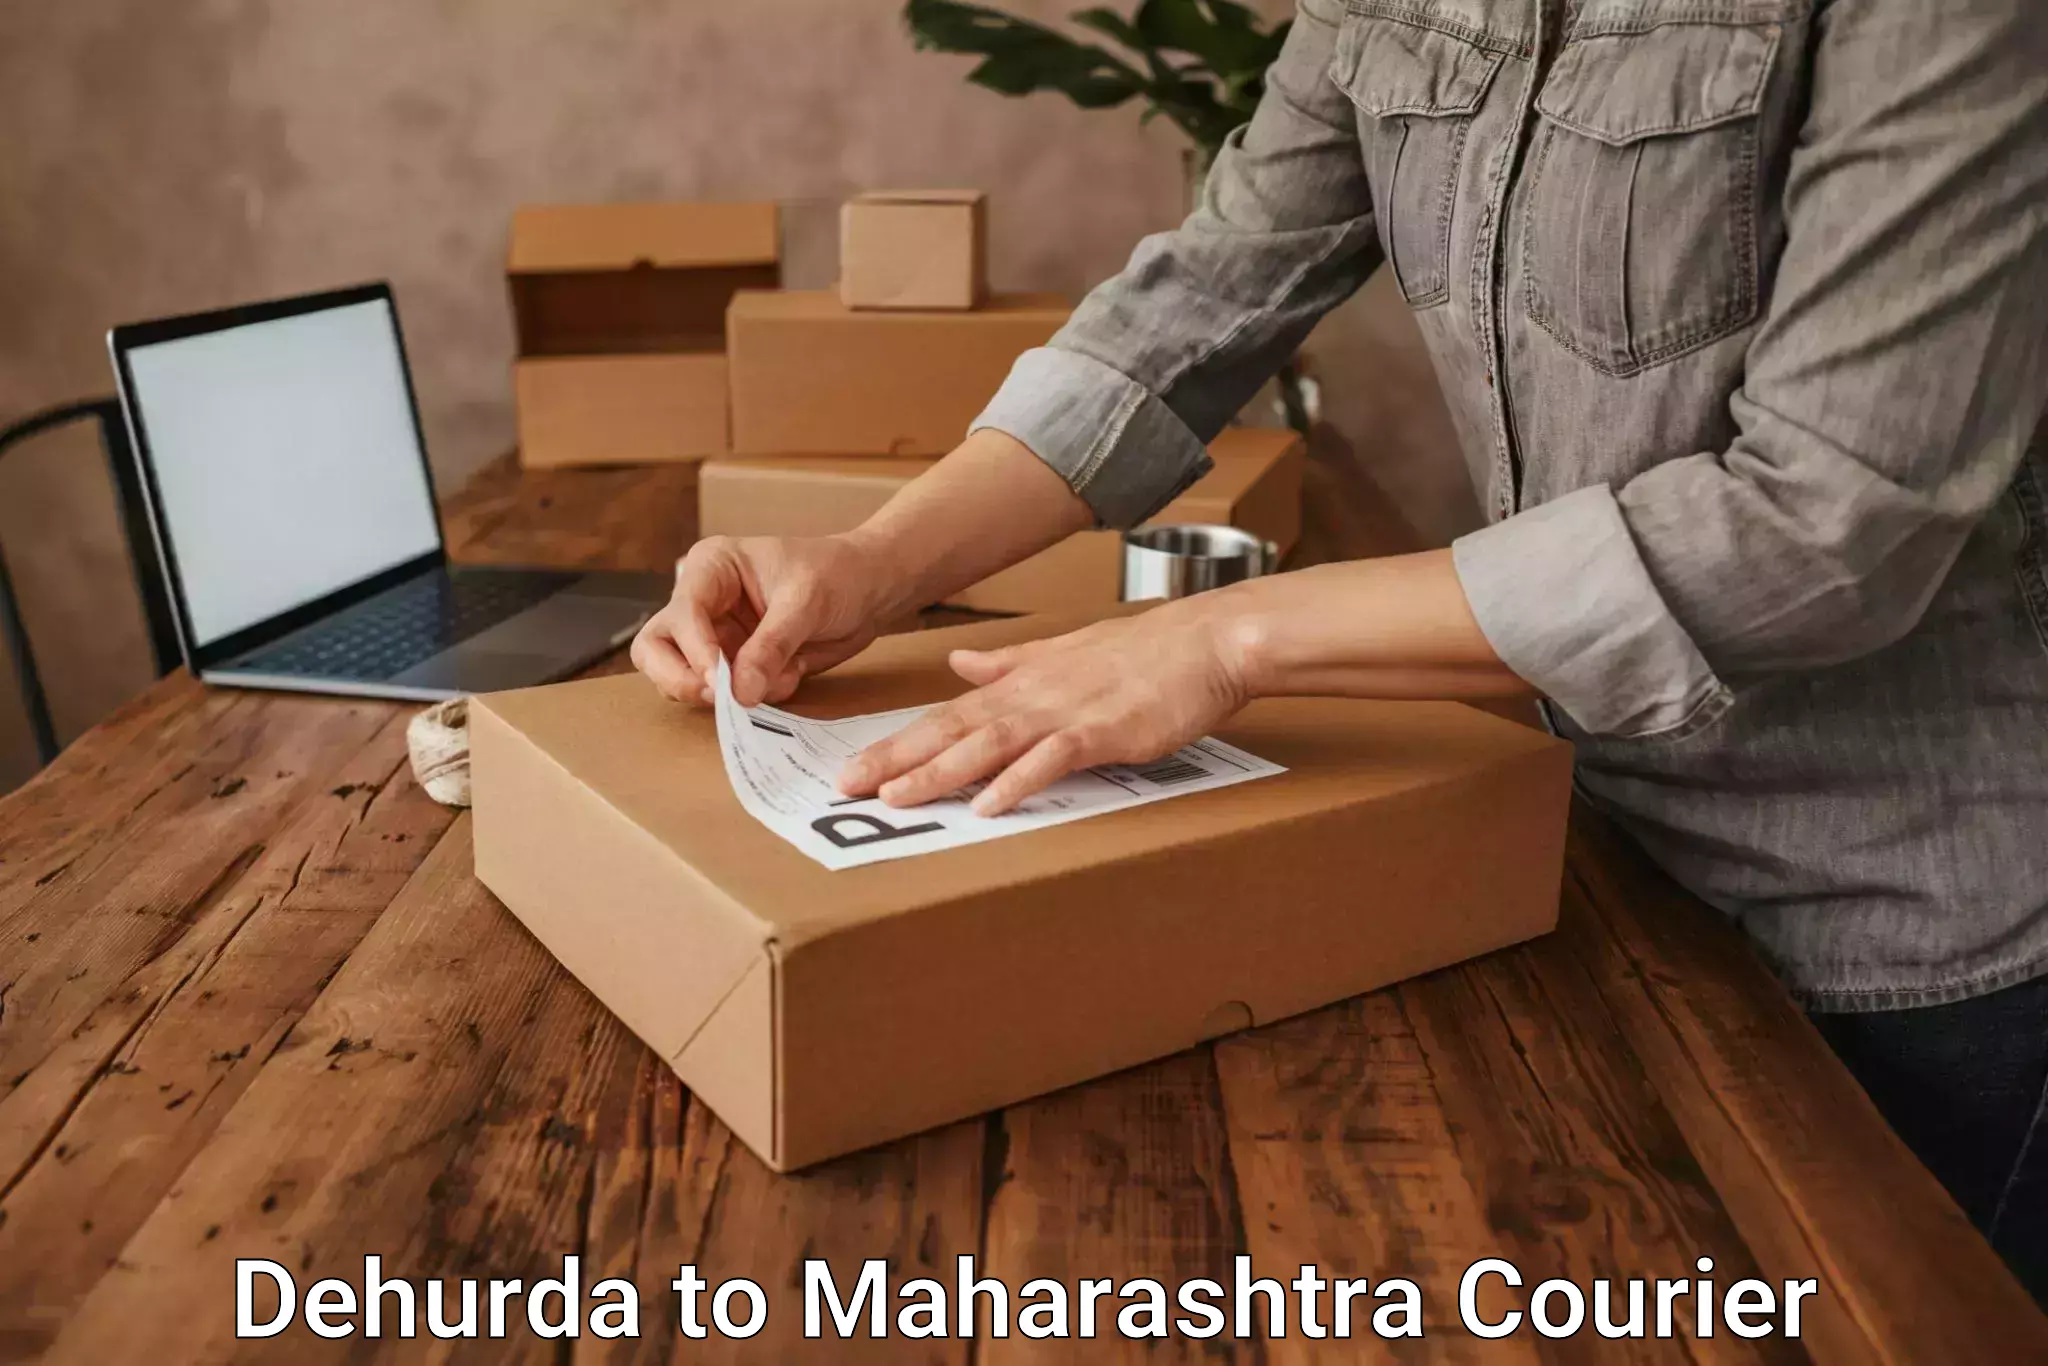 Efficient freight service Dehurda to Maharashtra